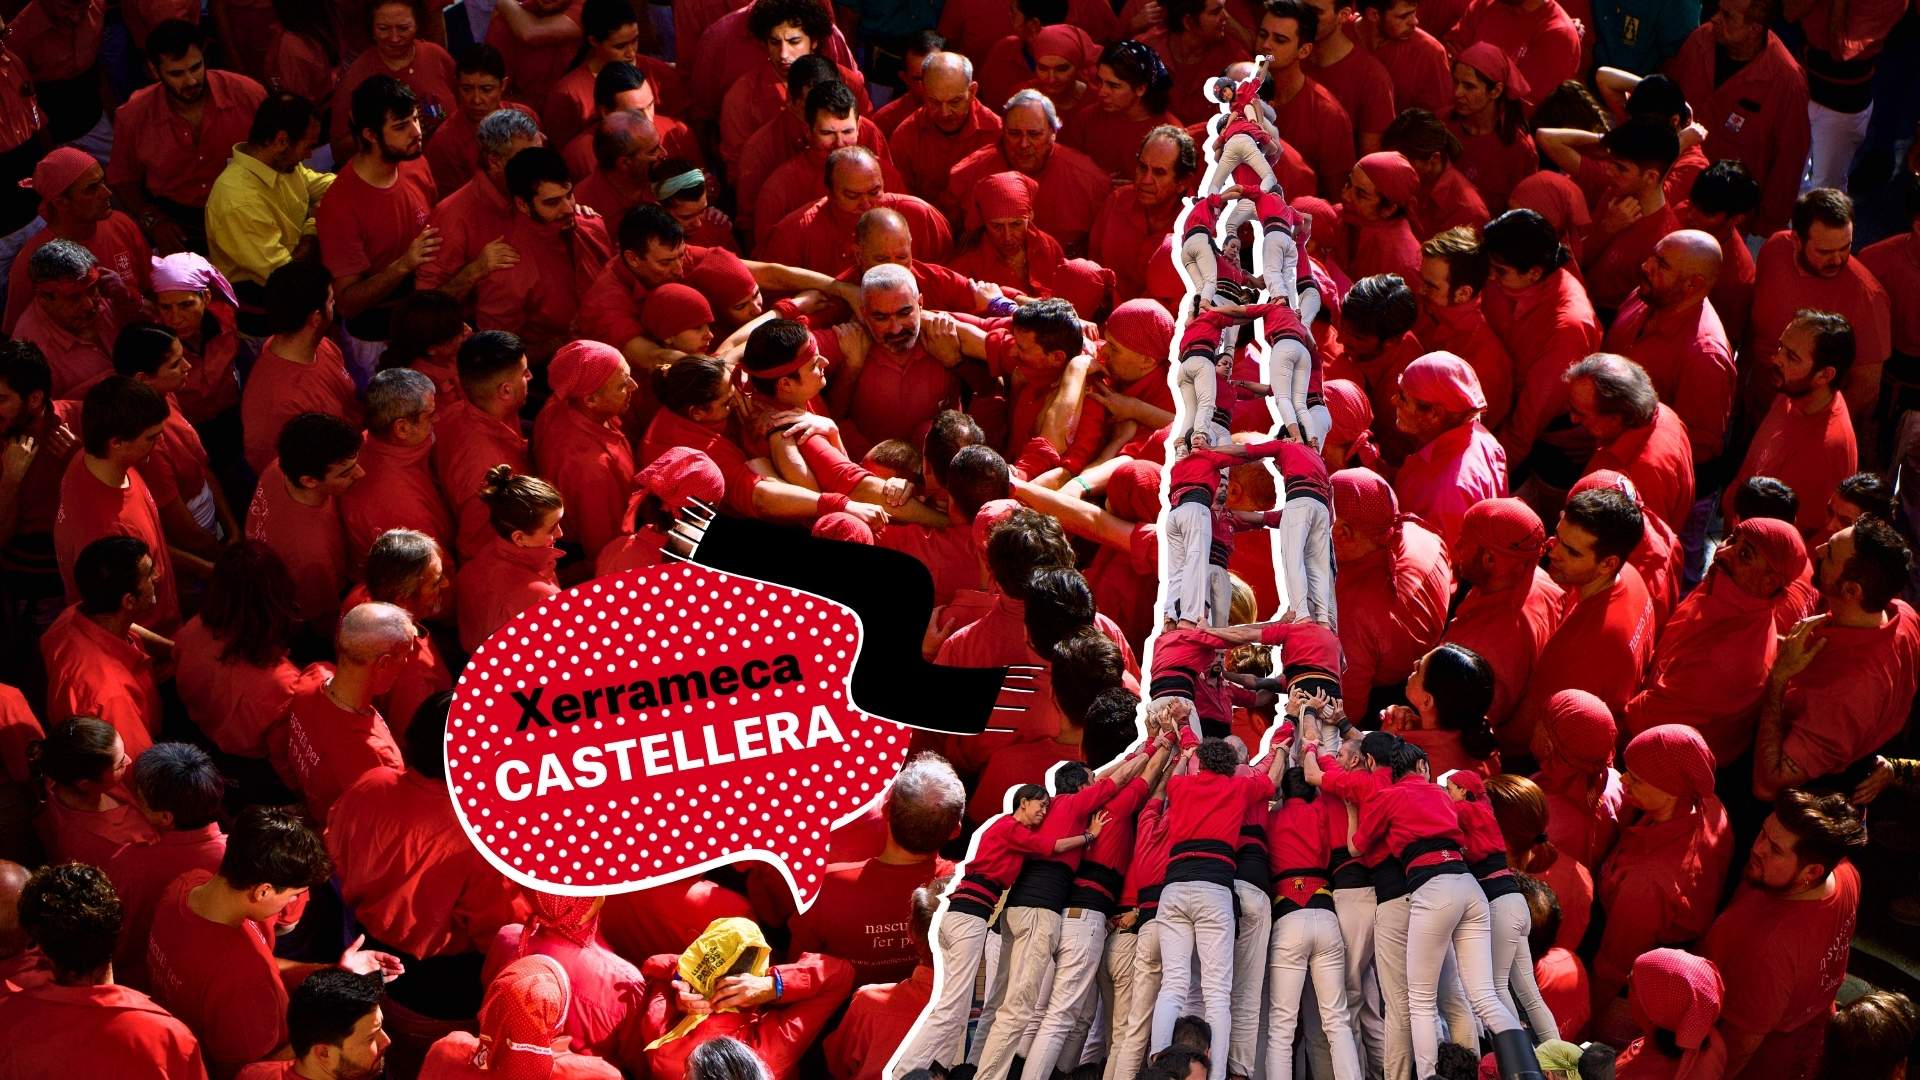 ¿Castell, castellet o casteller? ¿Cómo tenemos que llamar a la tradición catalana?